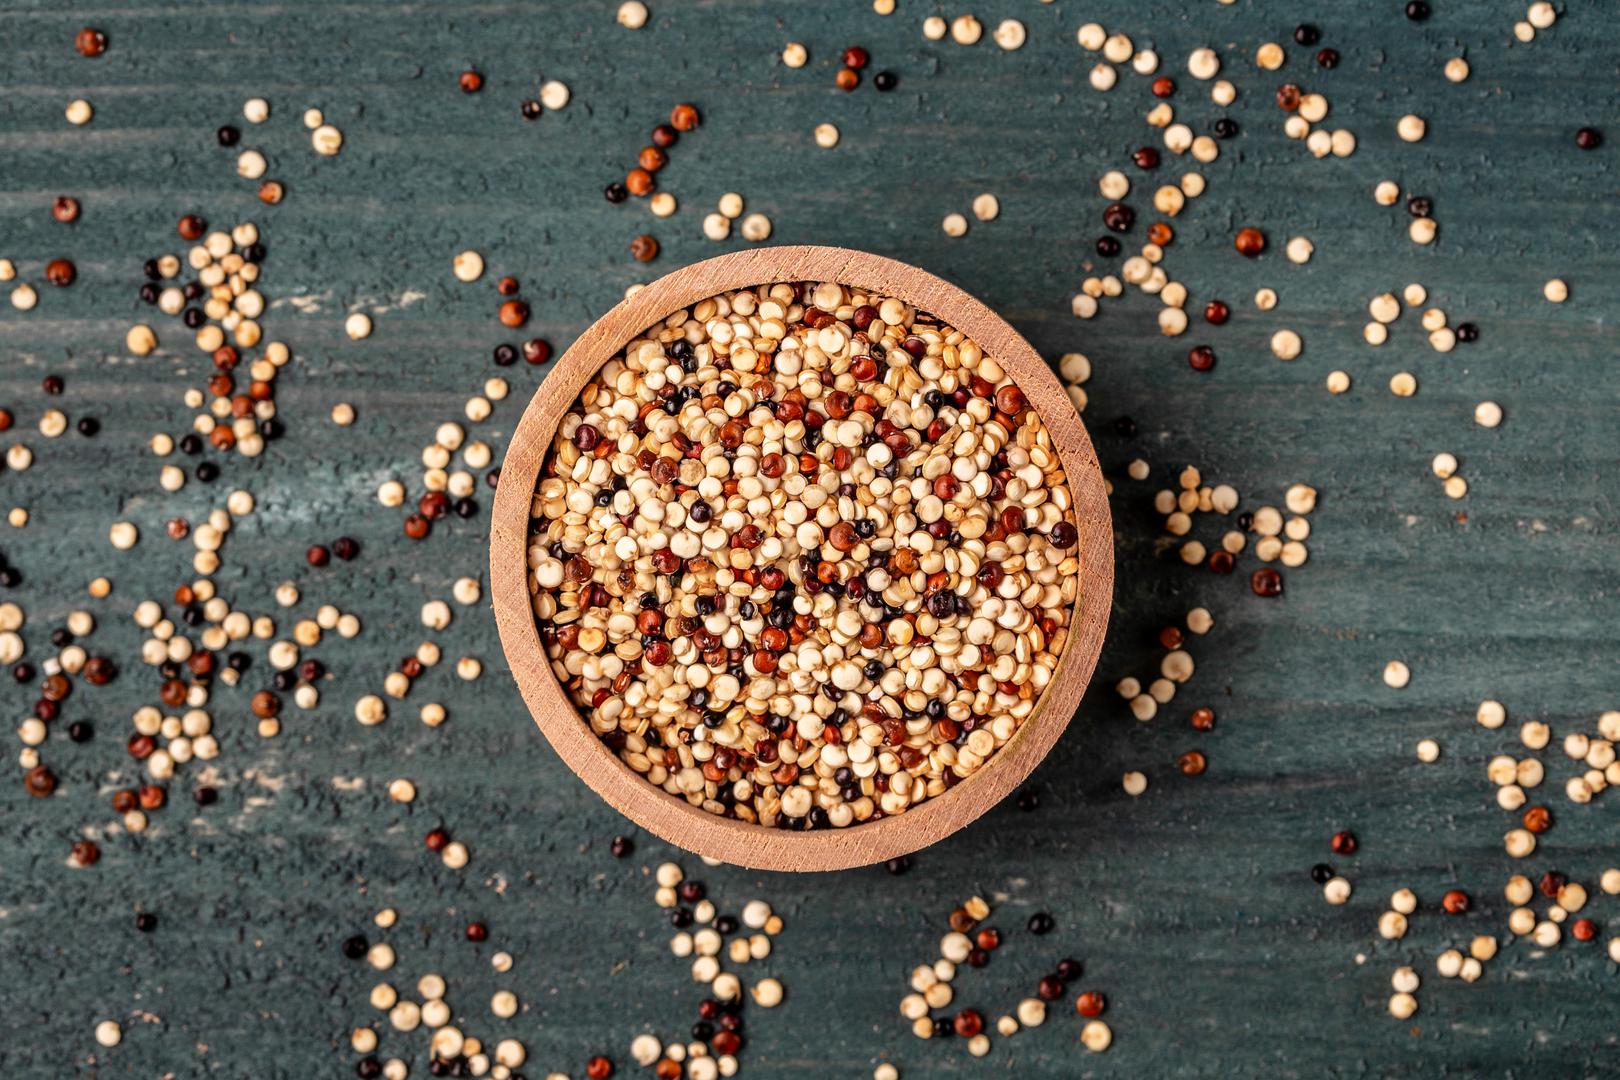 Kvinoja: Rok trajanja cjelovitih žitarica kao što je kvinoja uvelike ovisi o njihovom sadržaju masti. Toplina, zrak i vlaga tri su glavna neprijatelja cjelovitih žitarica jer elementi mogu negativno utjecati na njihova zdrava ulja, što zauzvrat može uzrokovati da vam žitarice užegnu dok stoje u smočnici. “Žitarice bi uvijek trebale izgledati i mirisati blago slatko ili uopće ne bi imale arome”, navodi Vijeće za cjelovite žitarice. "Ako osjetite pljesniv ili uljast miris, žitarice su prošle svoj vrhunac."